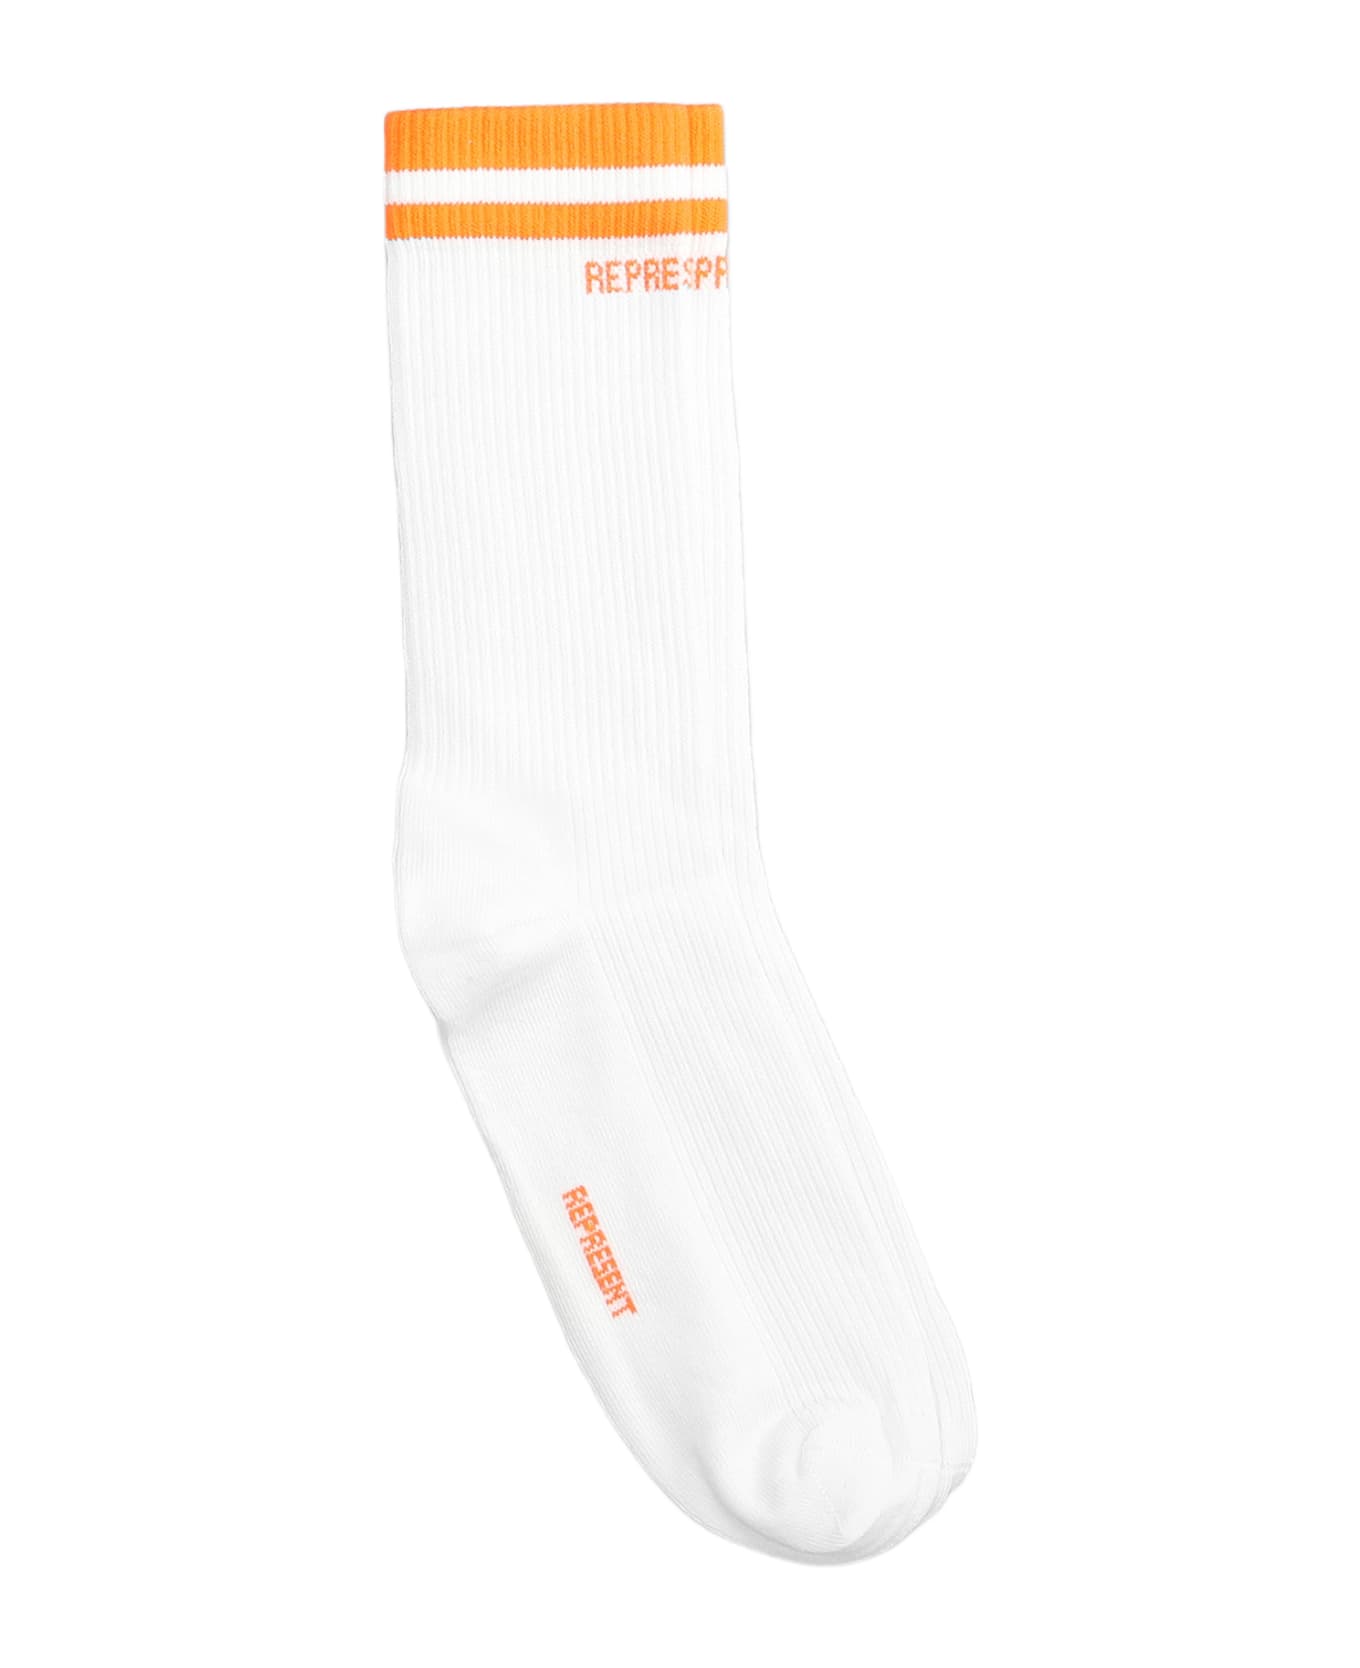 REPRESENT Socks In White Cotton - white 靴下